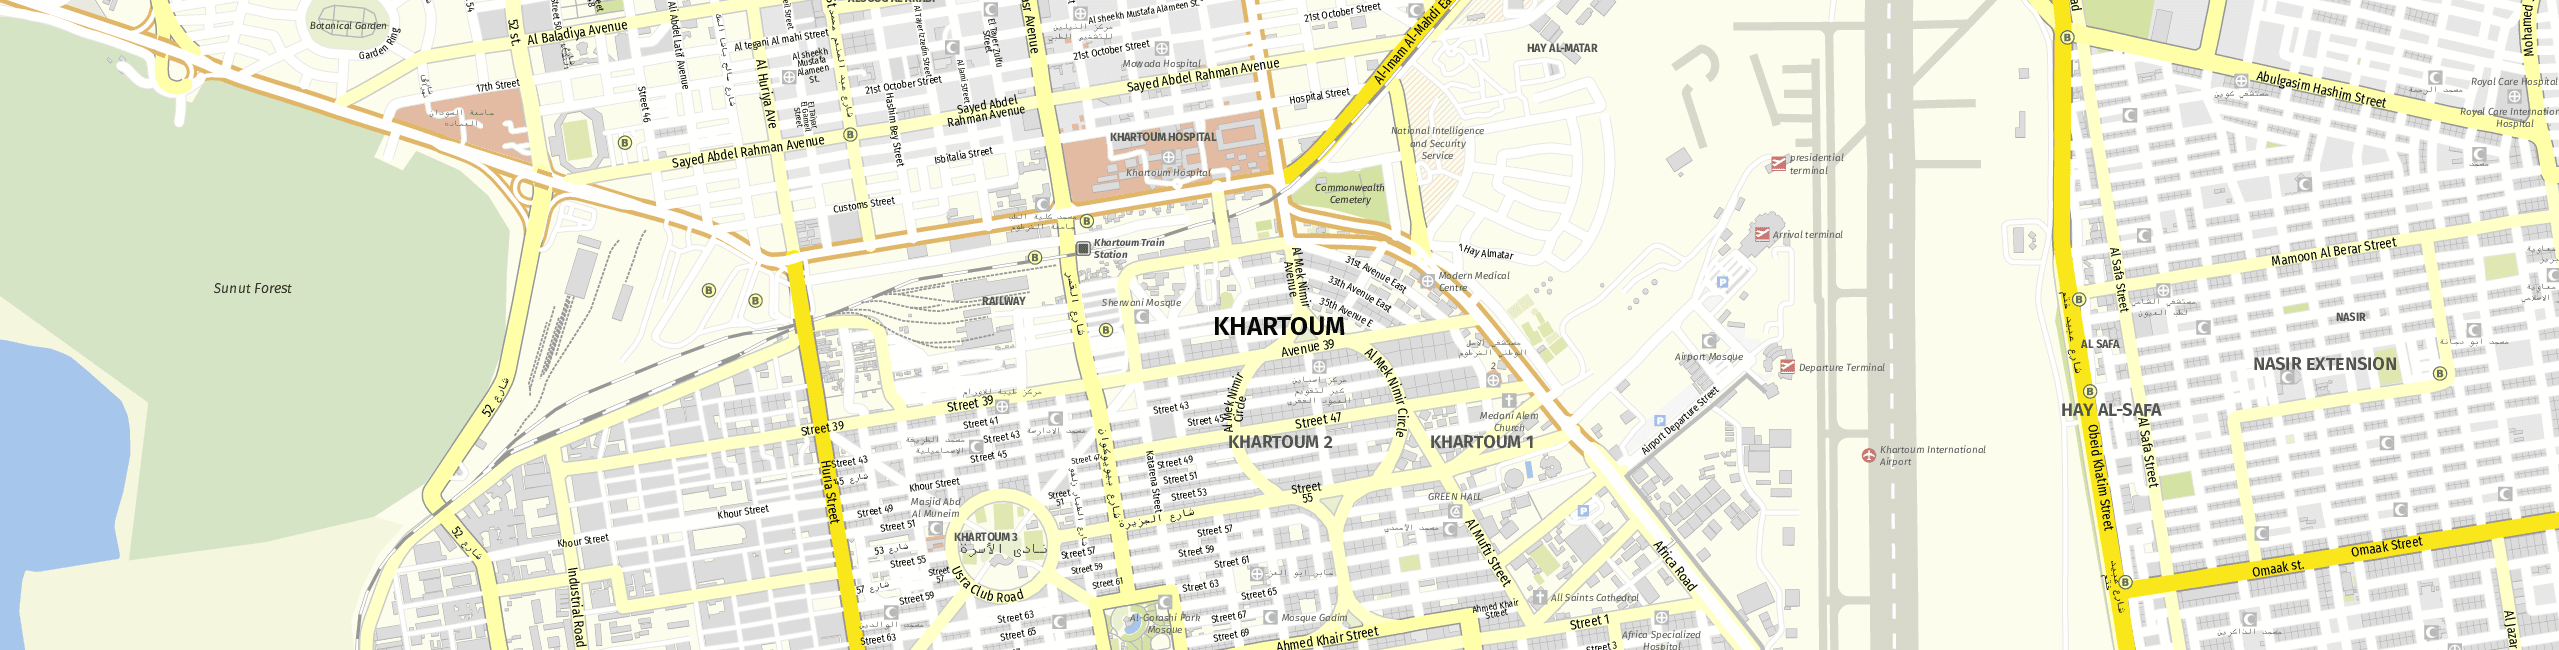 Stadtplan Khartum zum Downloaden.